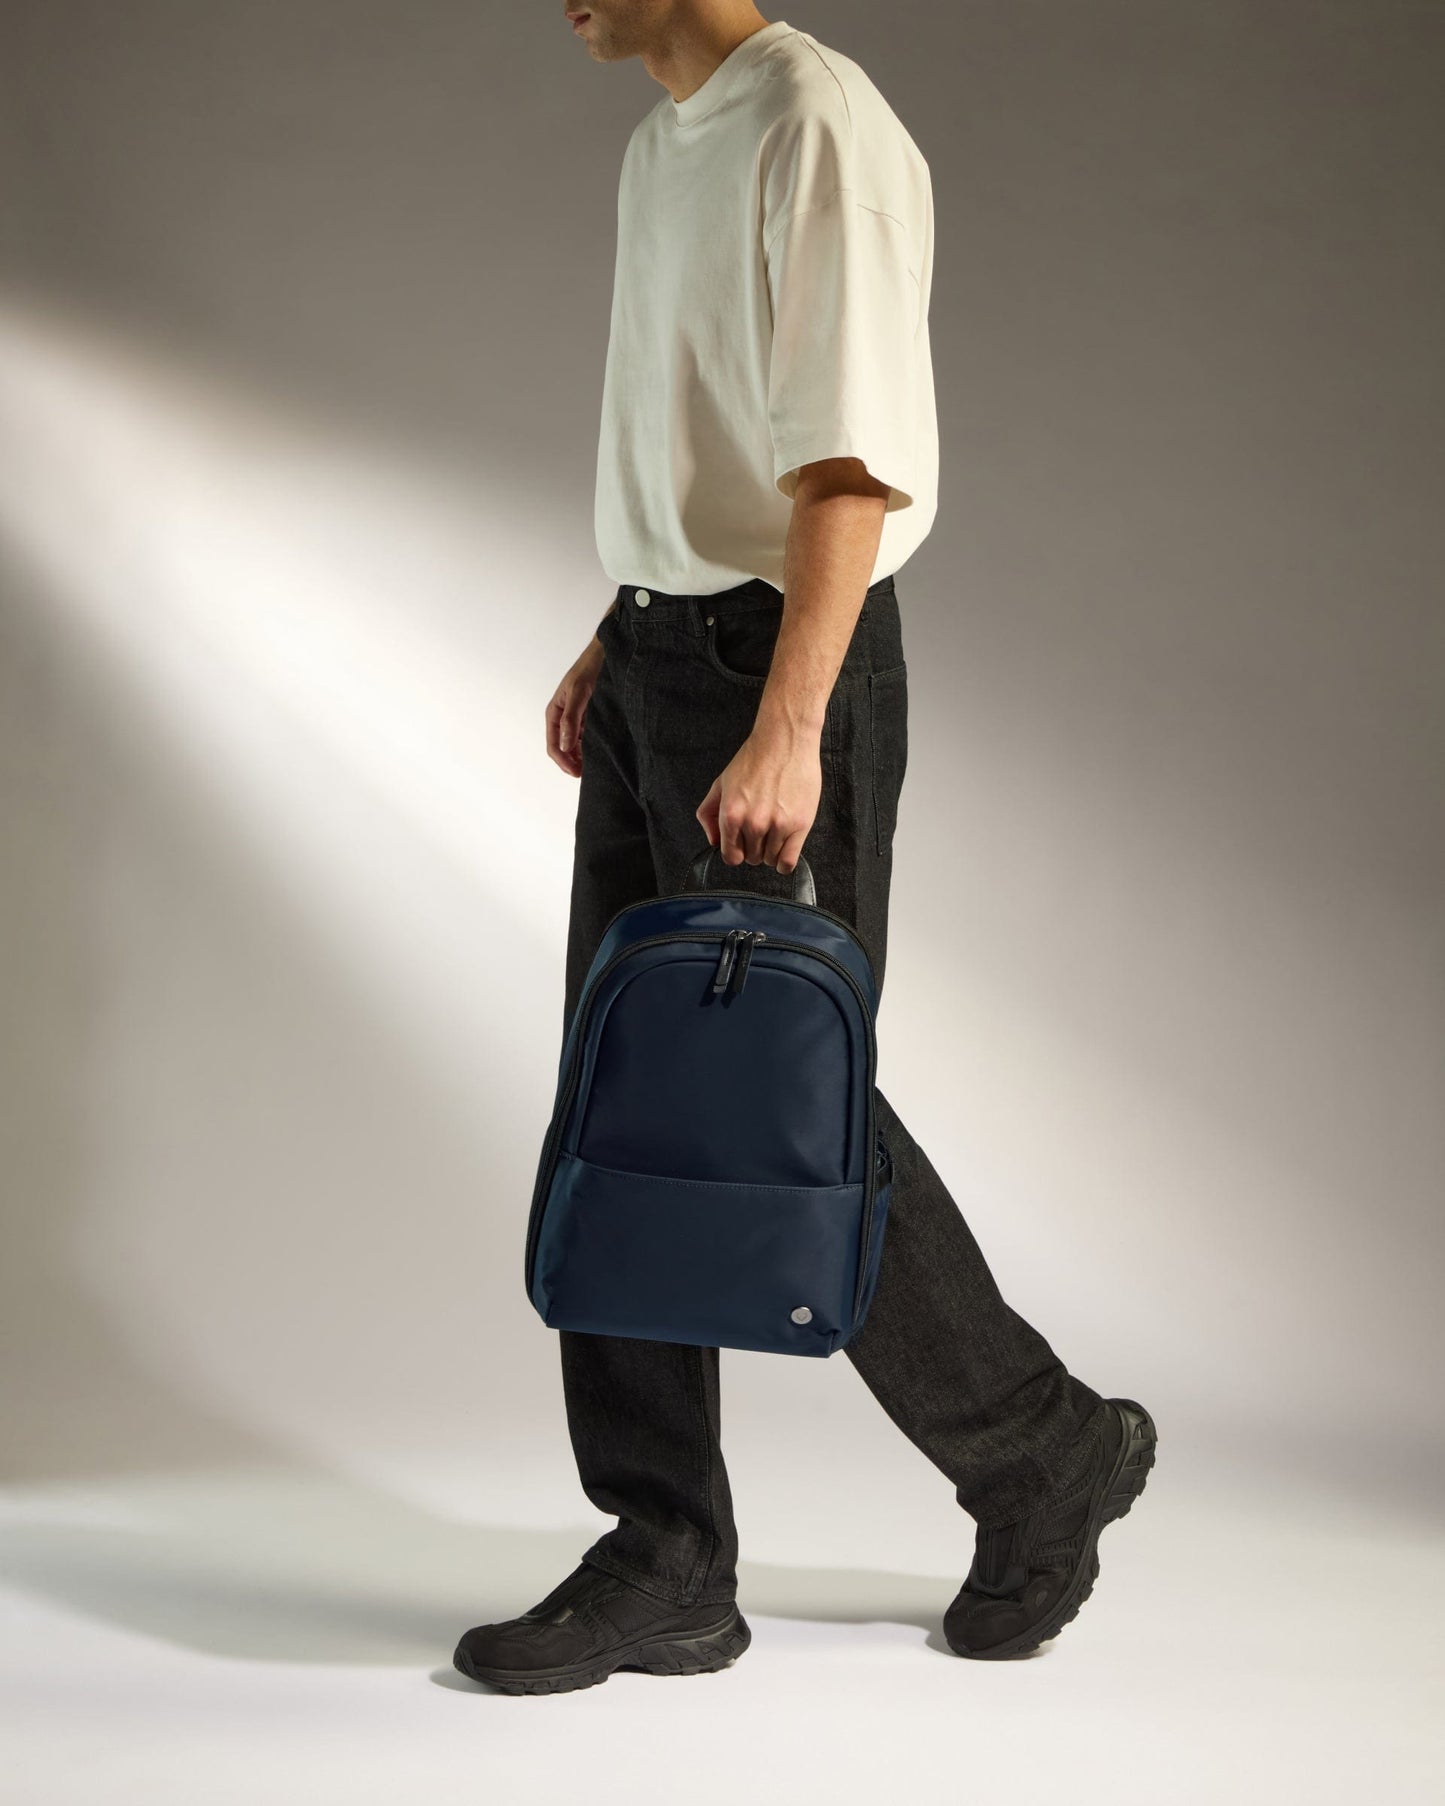 Antler Luggage -  Chelsea backpack in navy - Backpacks Chelsea Backpack Navy | Travel & Lifestyle Bags | Antler UK